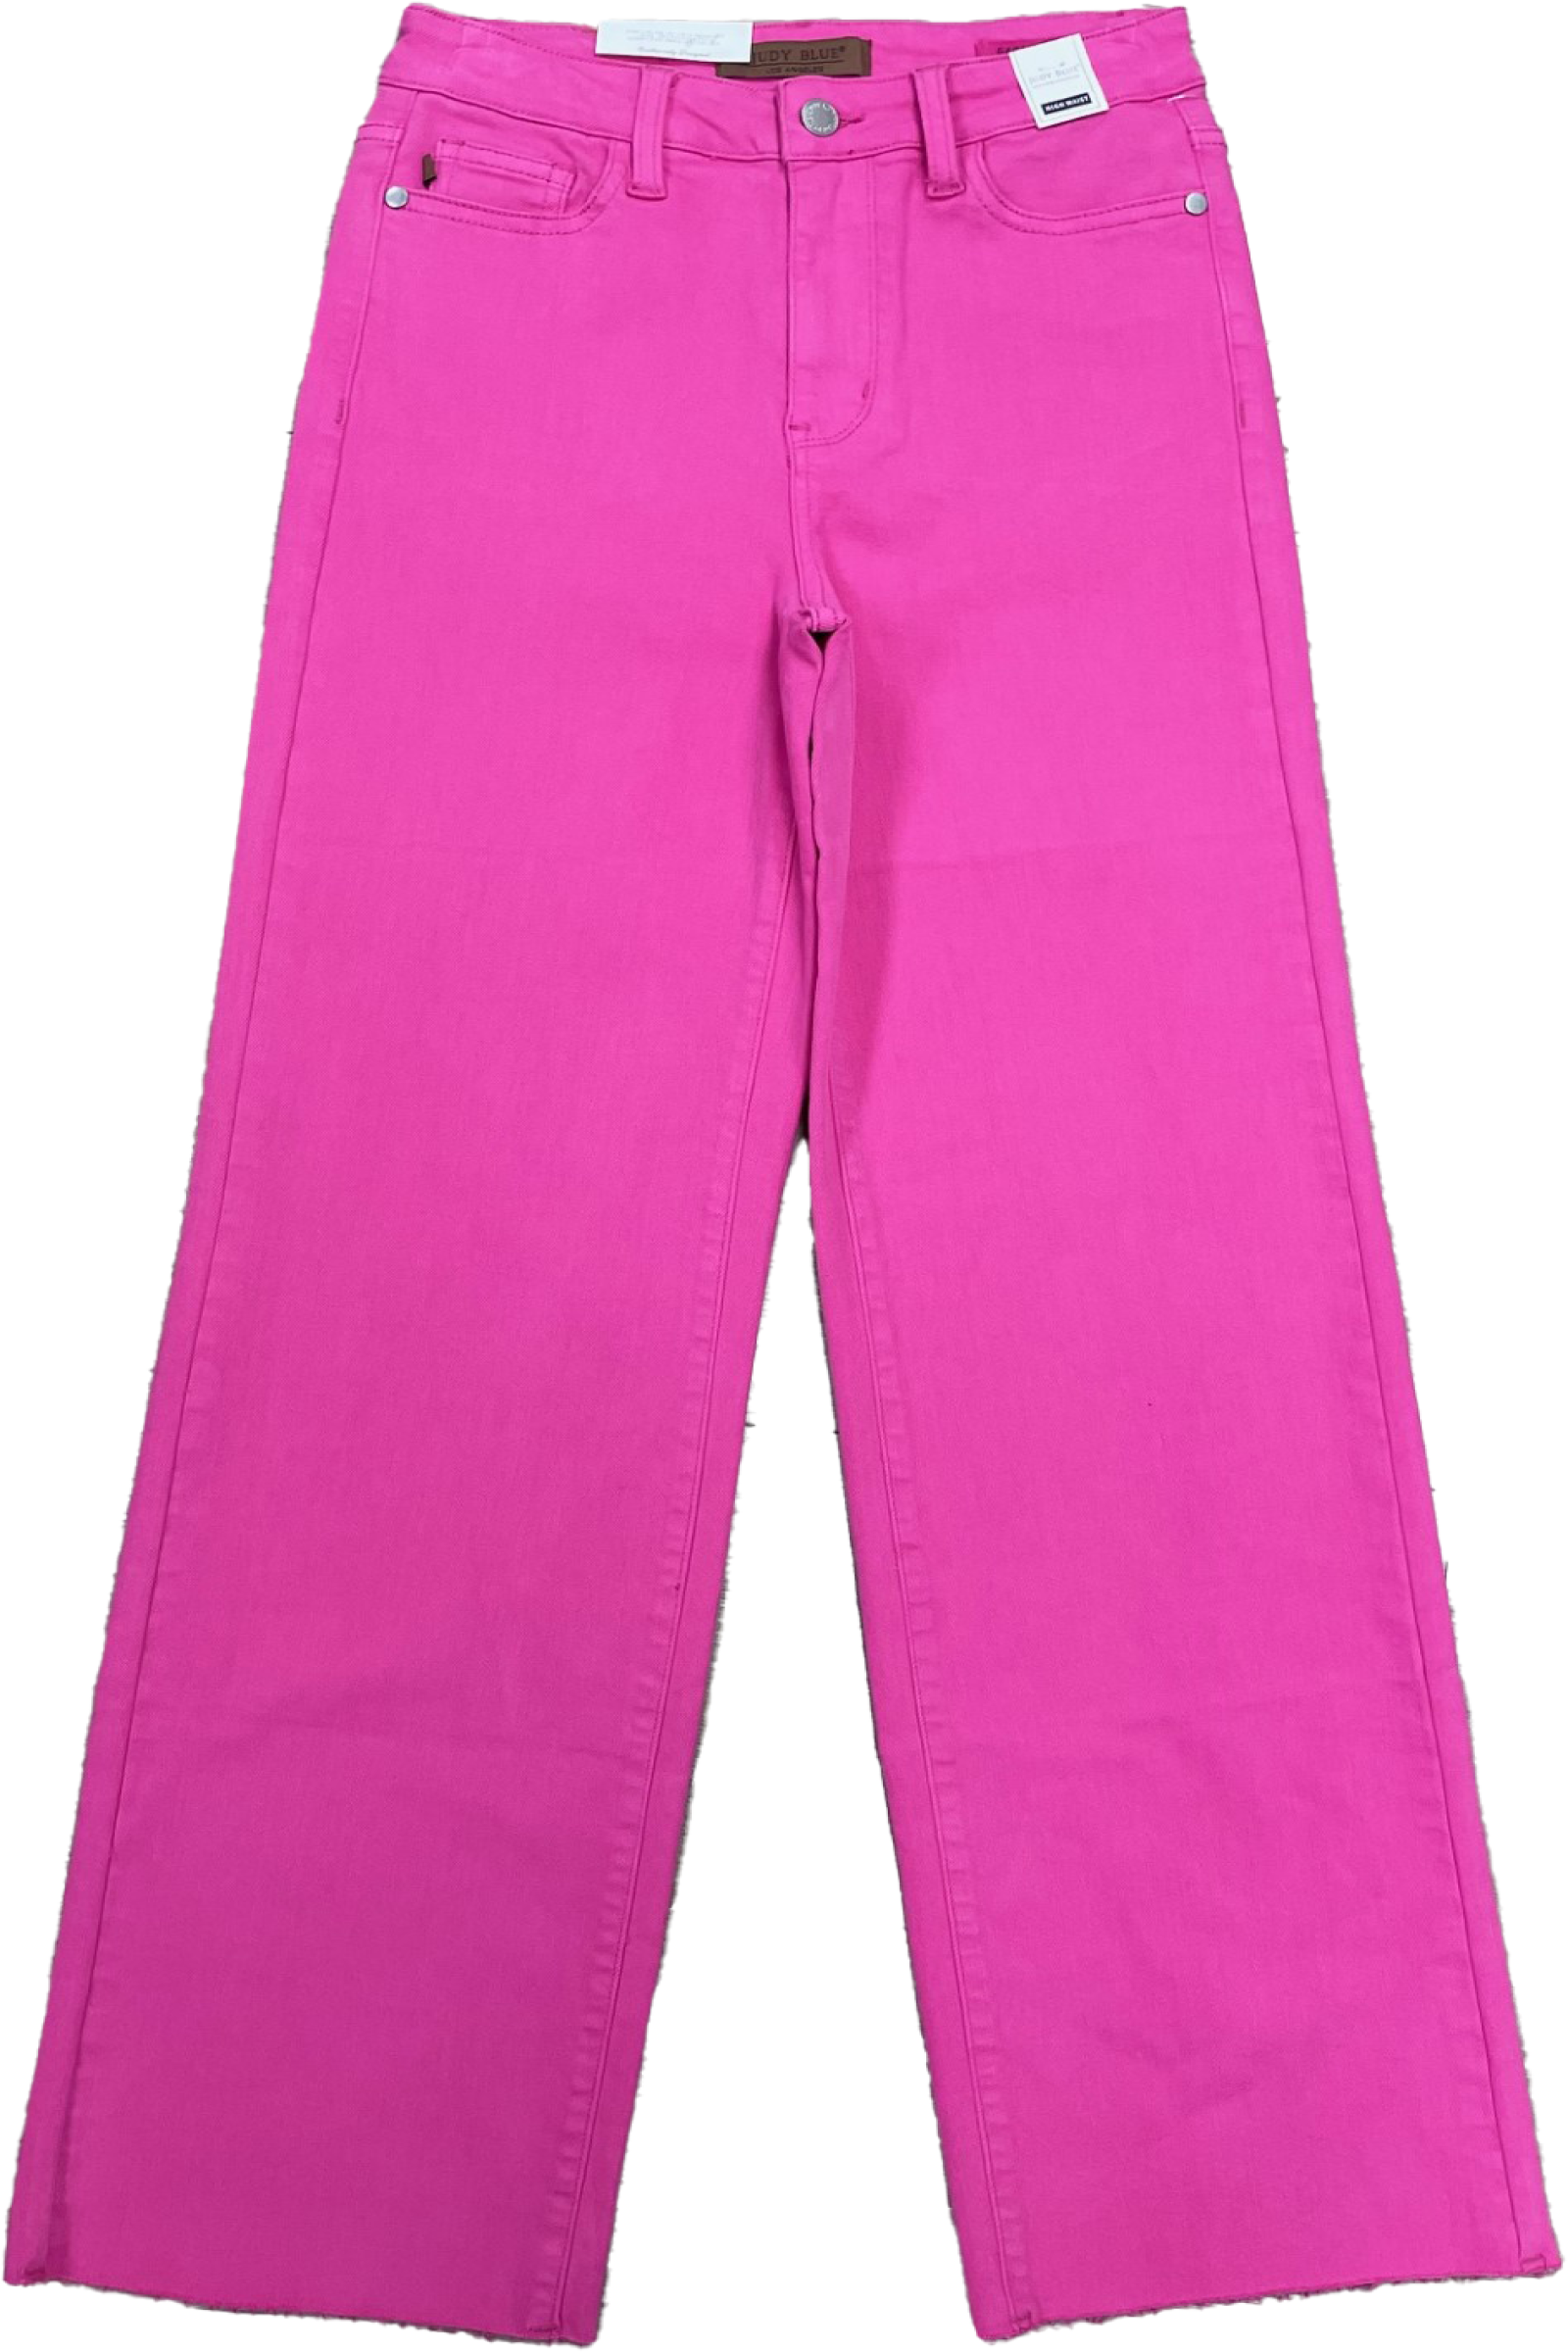 Judy Blue Hot Pink High Waist 90's Straight Jeans